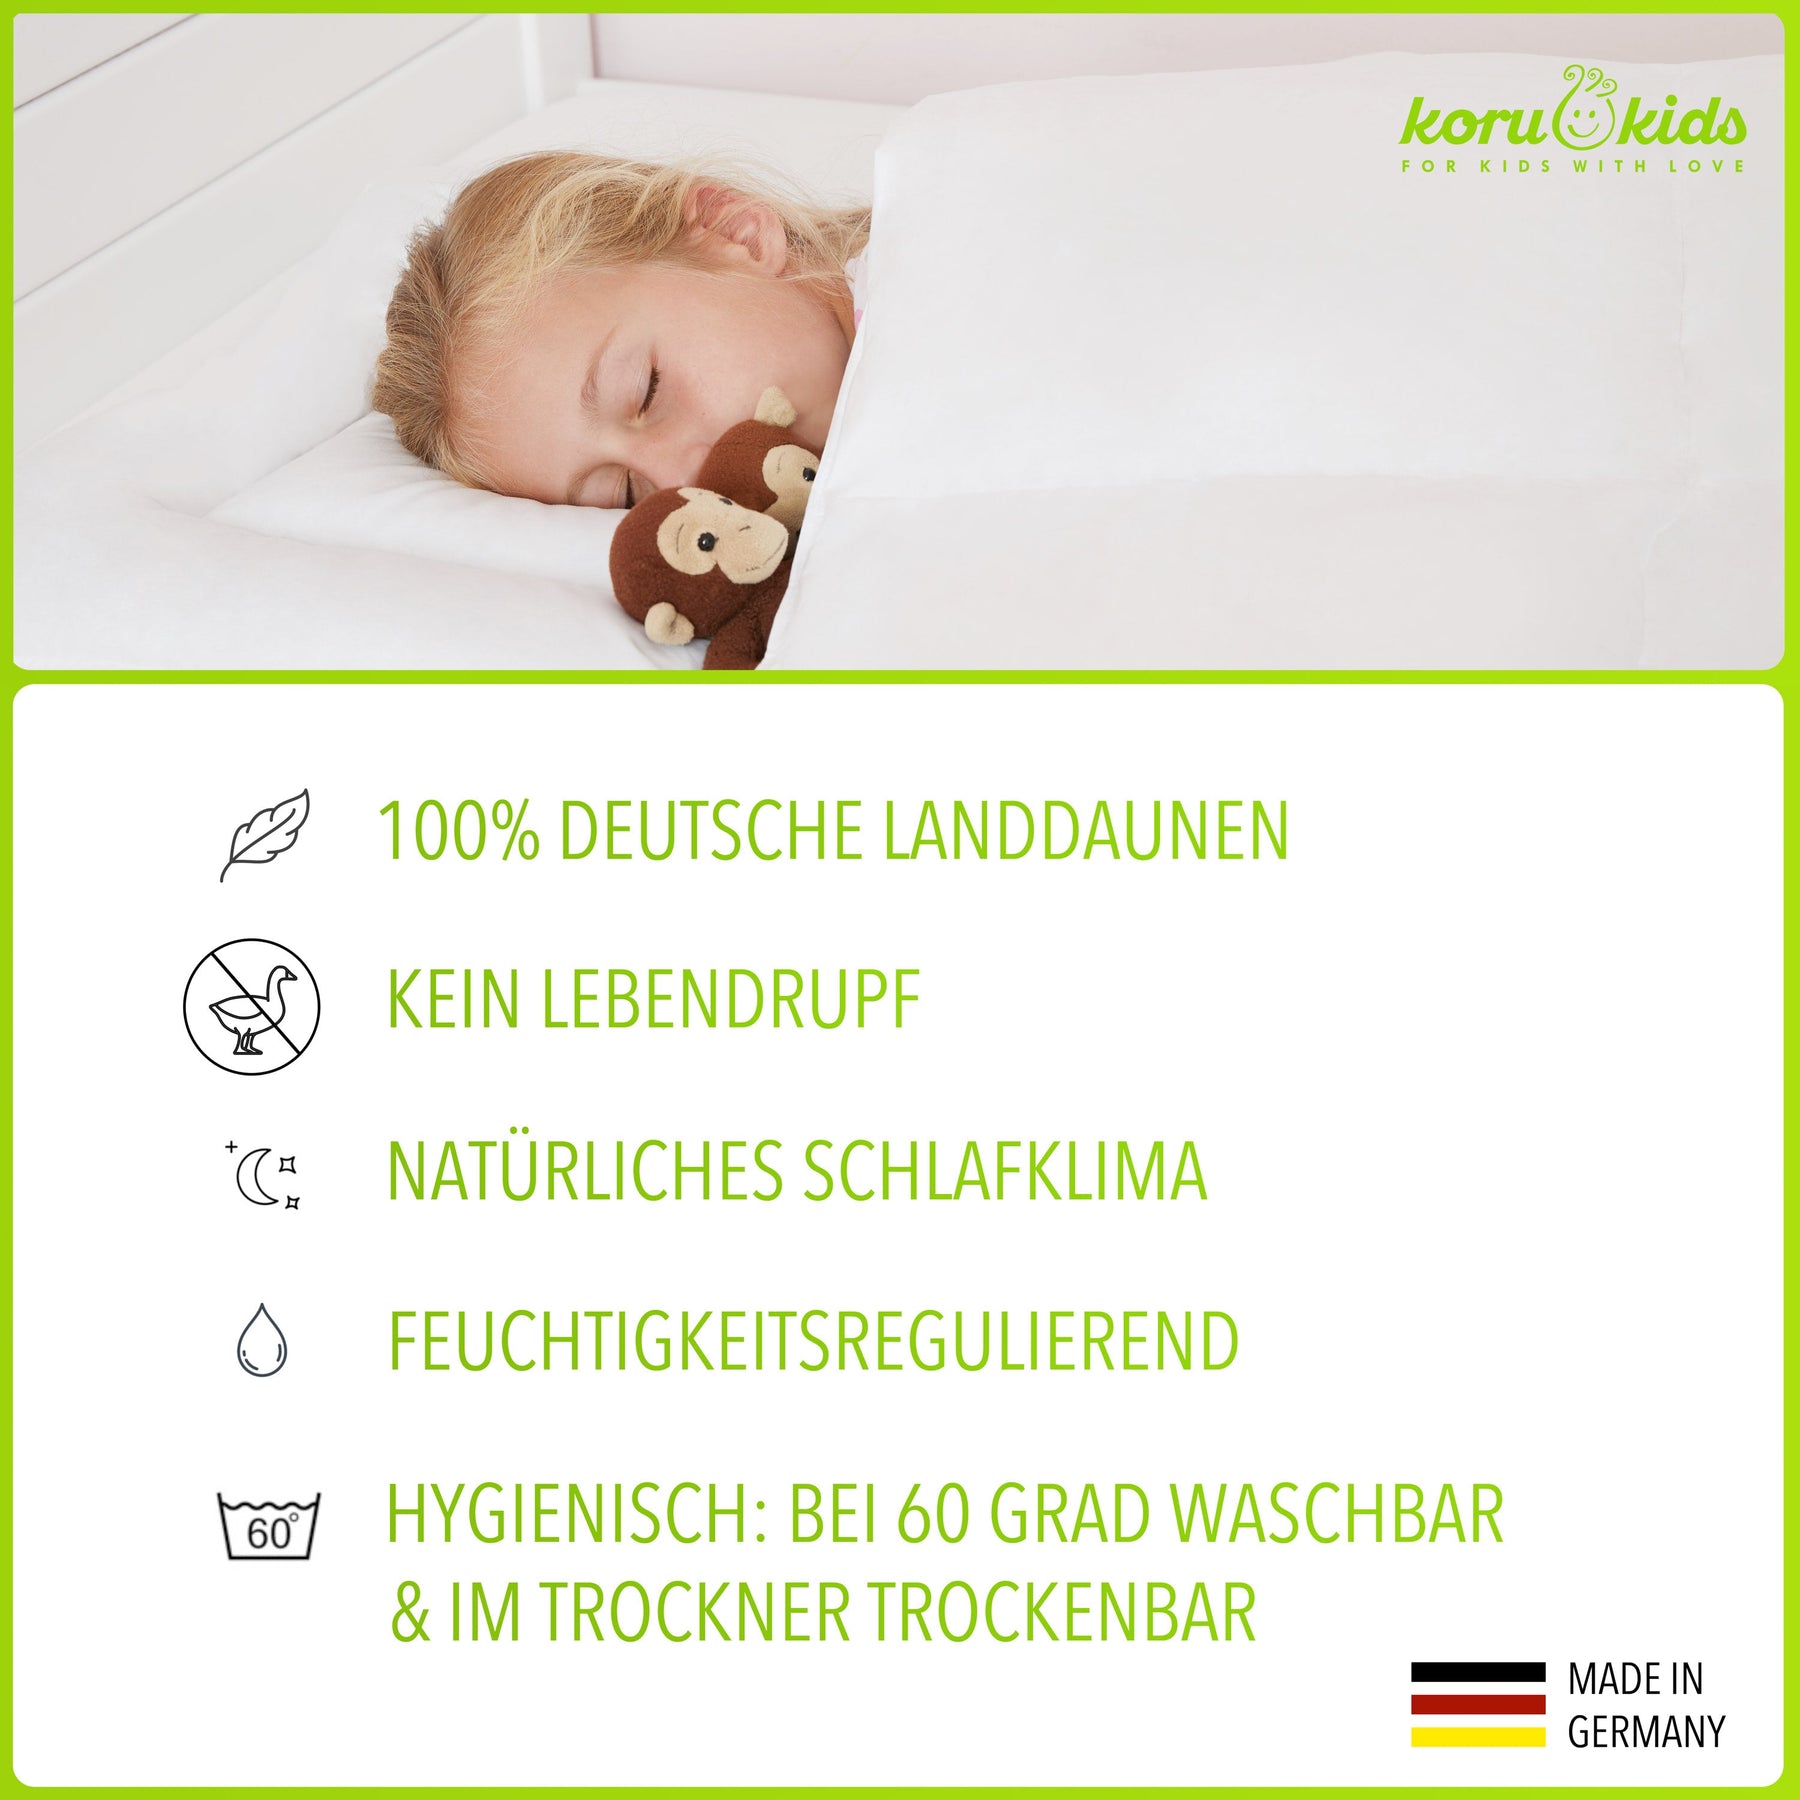 Kinderbettdecke und Kissen | Kinderdaunendecke GmbH Koru | Deutschland – Kids Koru